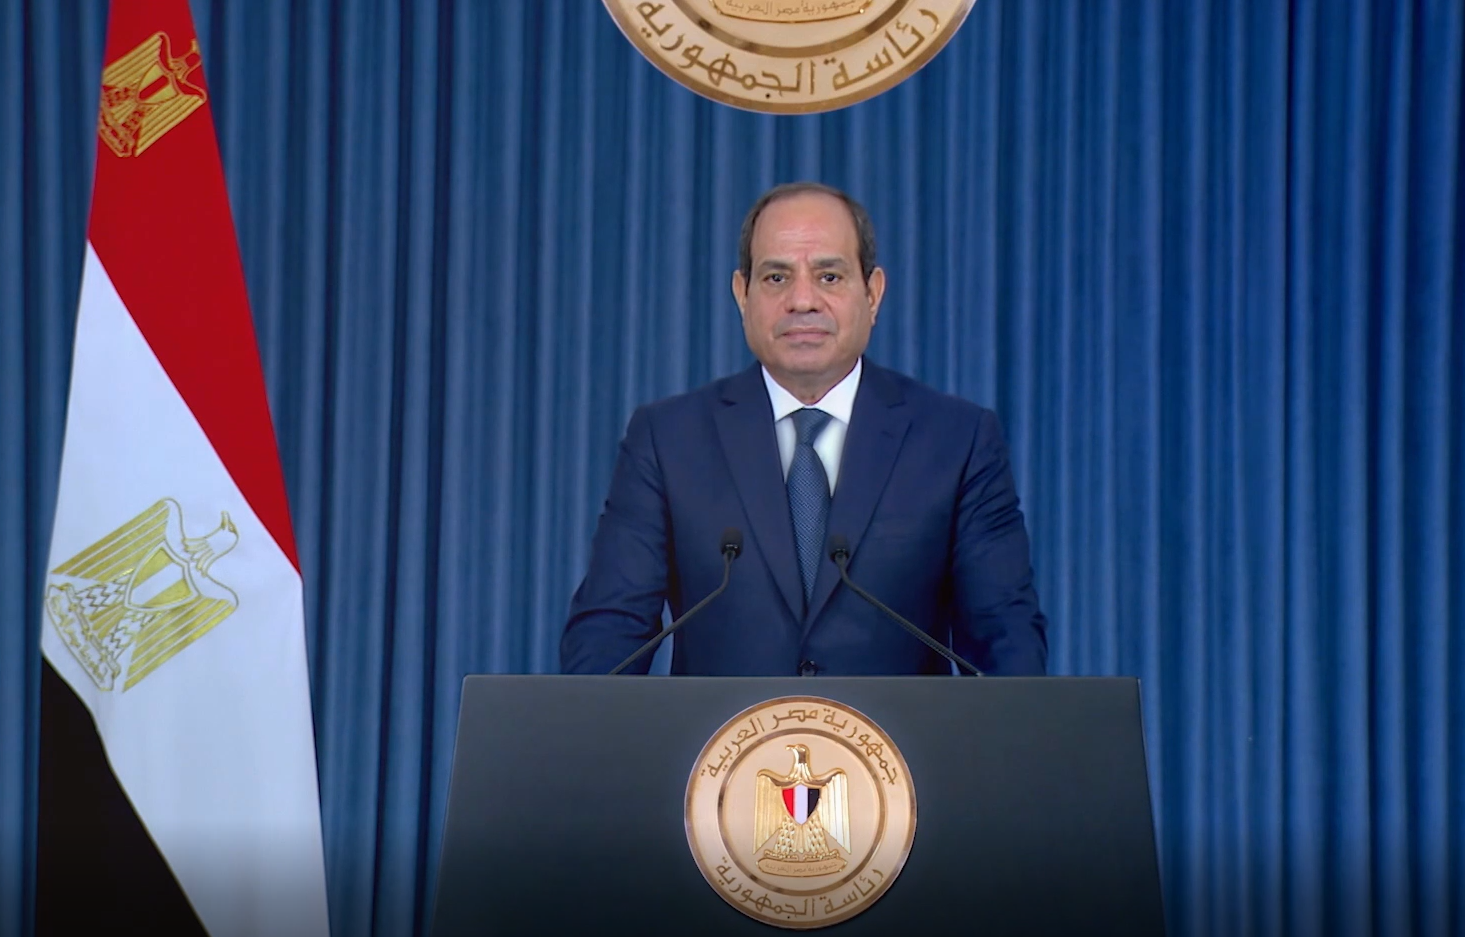 السيسي رئيساً لمصر حتى 2030 وسط تحديات اقتصادية صعبة - اقتصاد الشرق مع  بلومبرغ